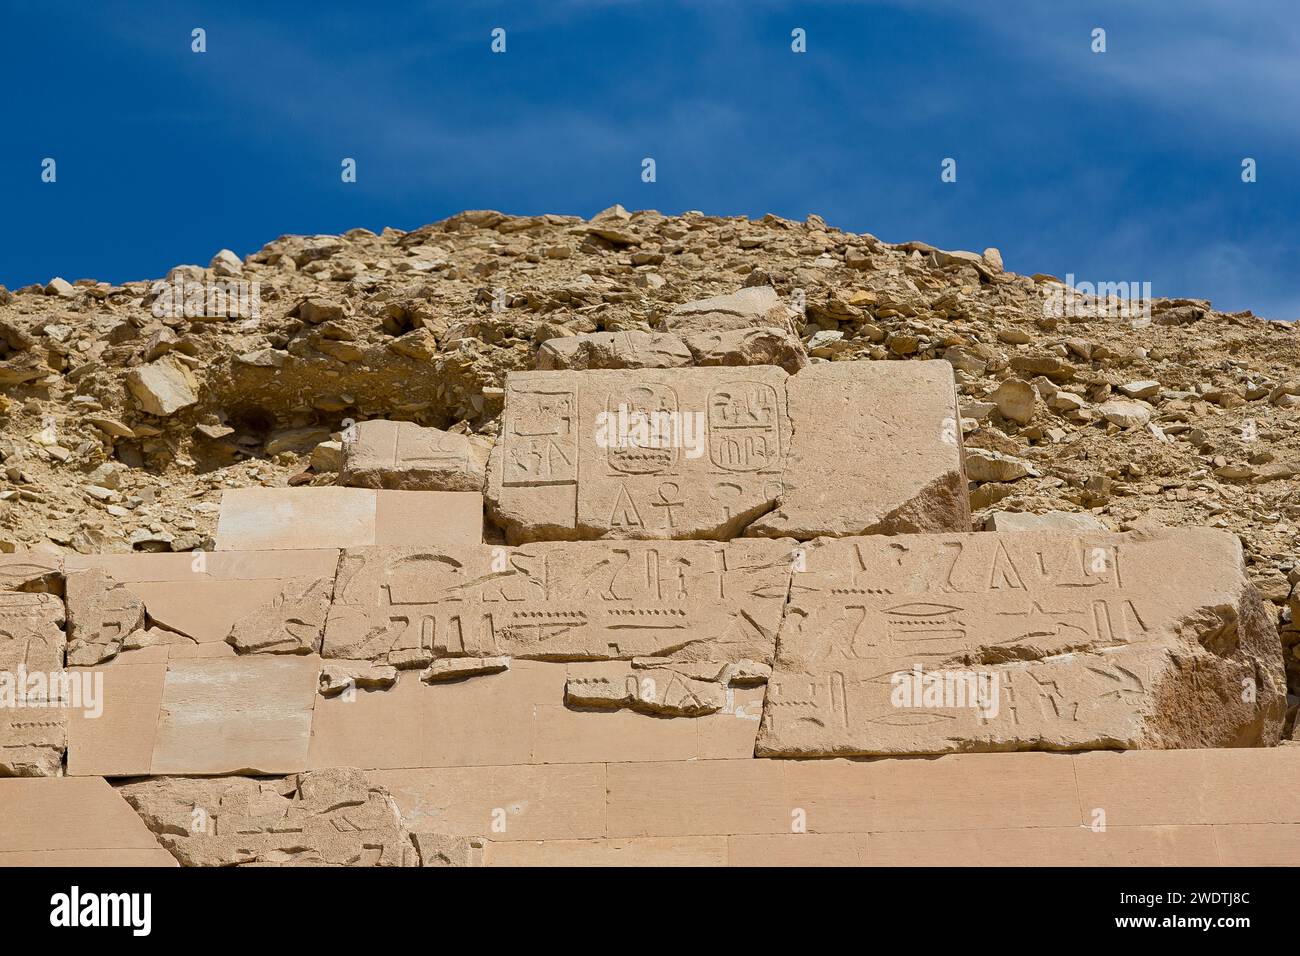 Egitto, Saqqara, piramide di Unas, dettaglio del principe Khaemwaset (figlio di Ramses II). Con il nome di Khaemwaset. Foto Stock